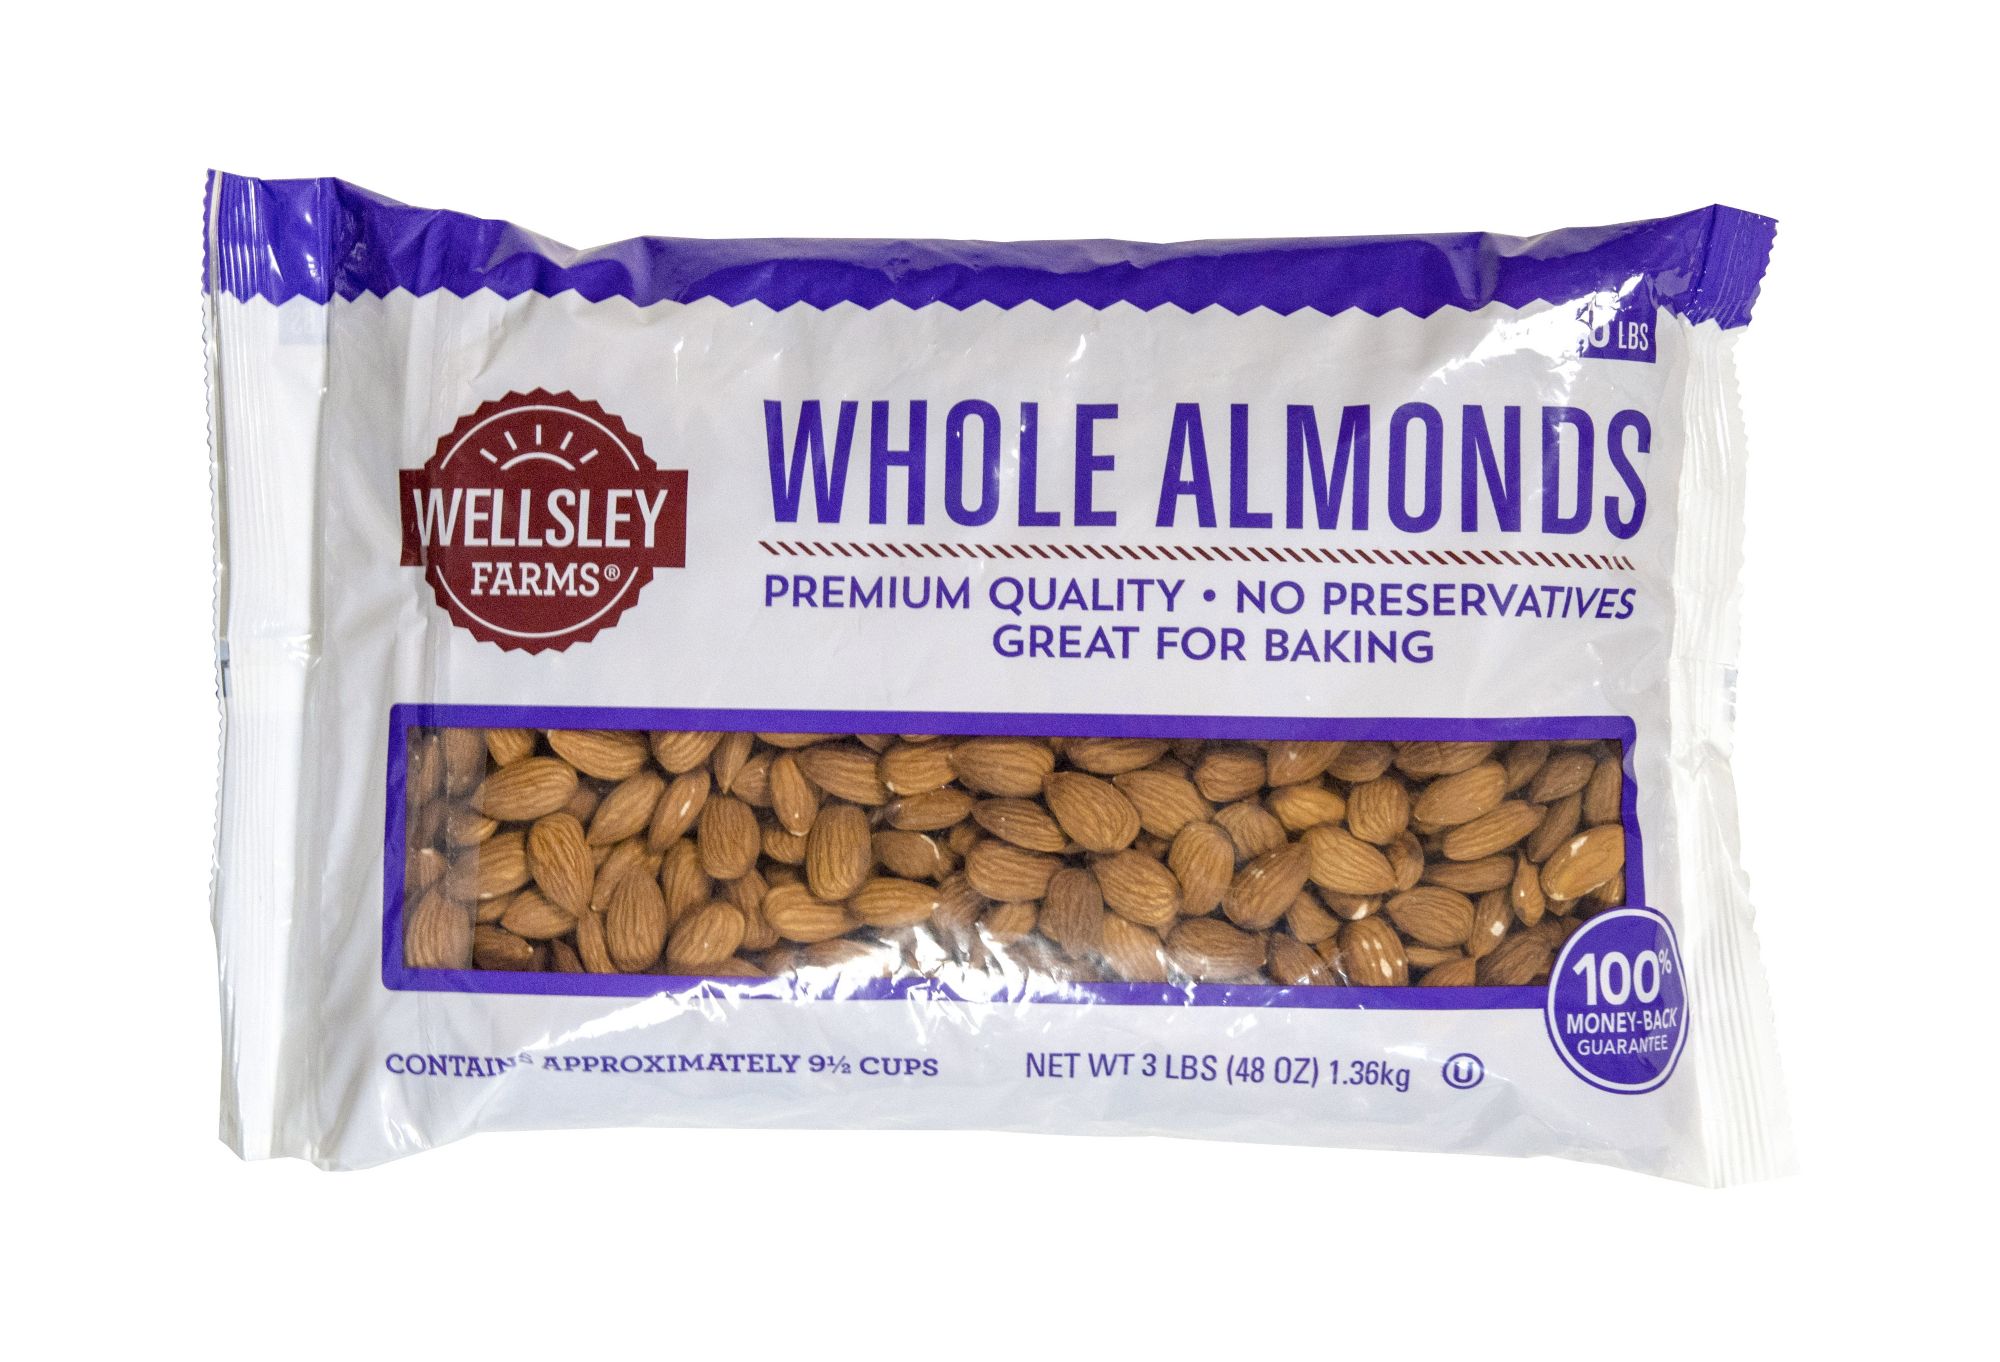 Wellsley Farms Whole Almonds, 48 oz.